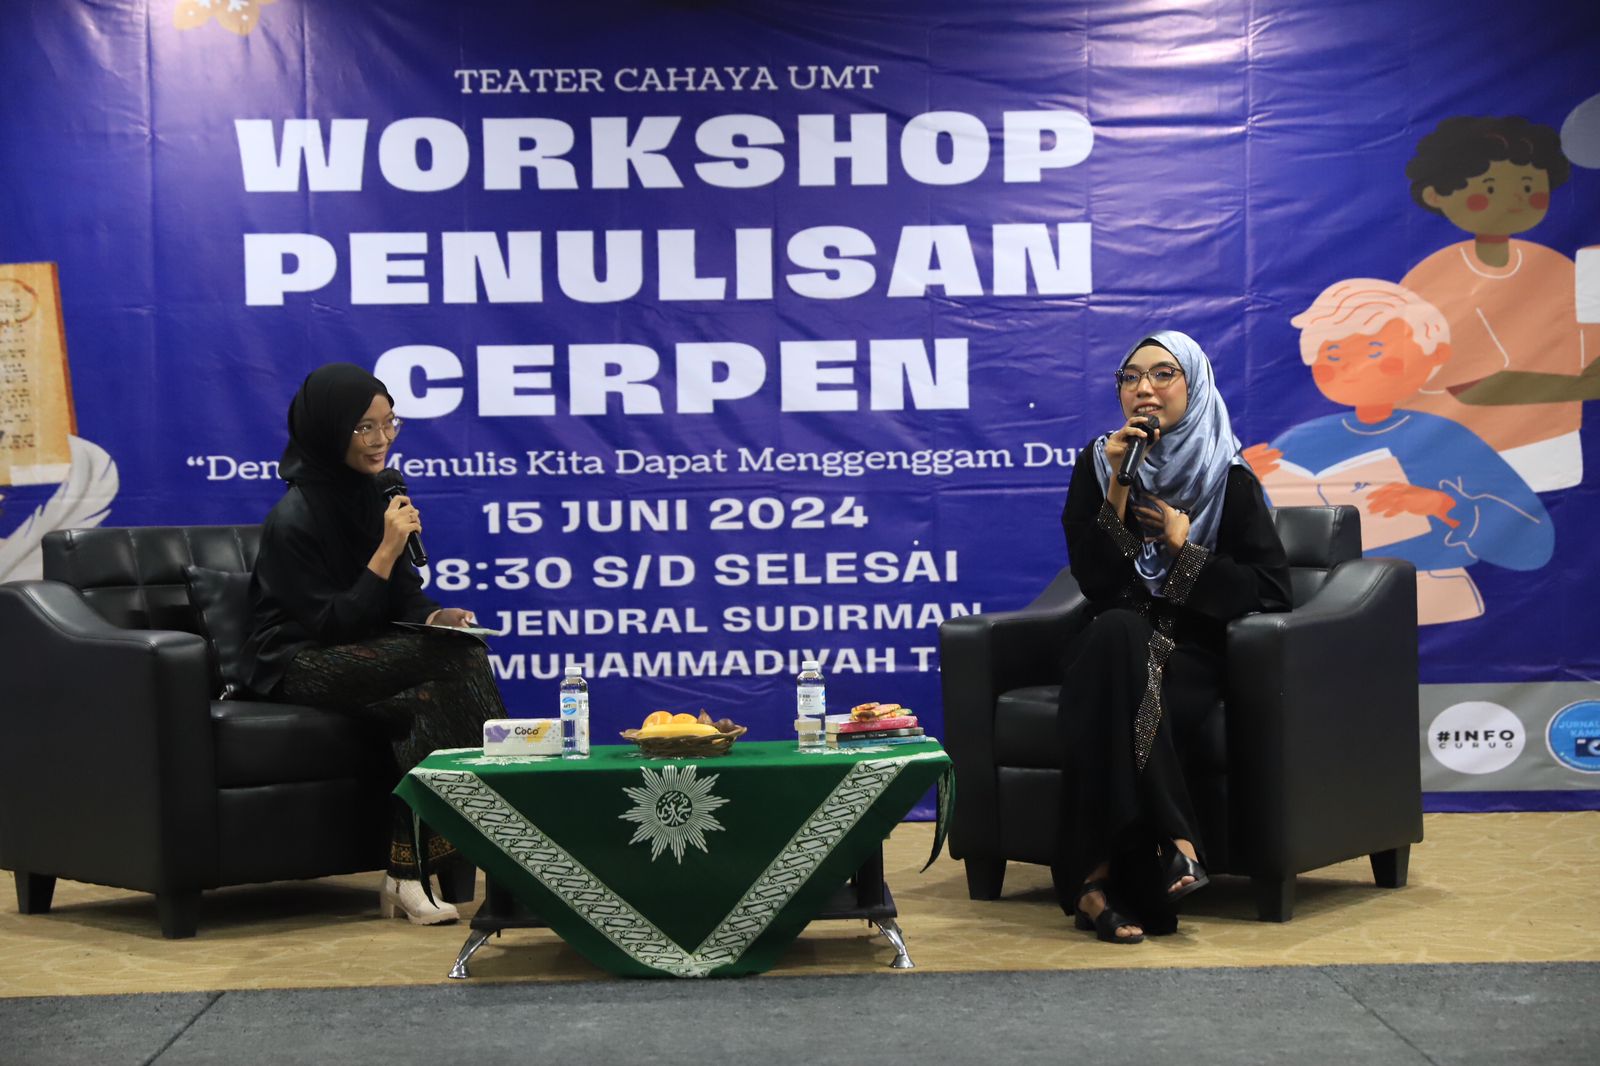 gaungkan-budaya-literasi-universitas-muhammadiyah-tangerang-gelar-workshop-penulisan-cerpen